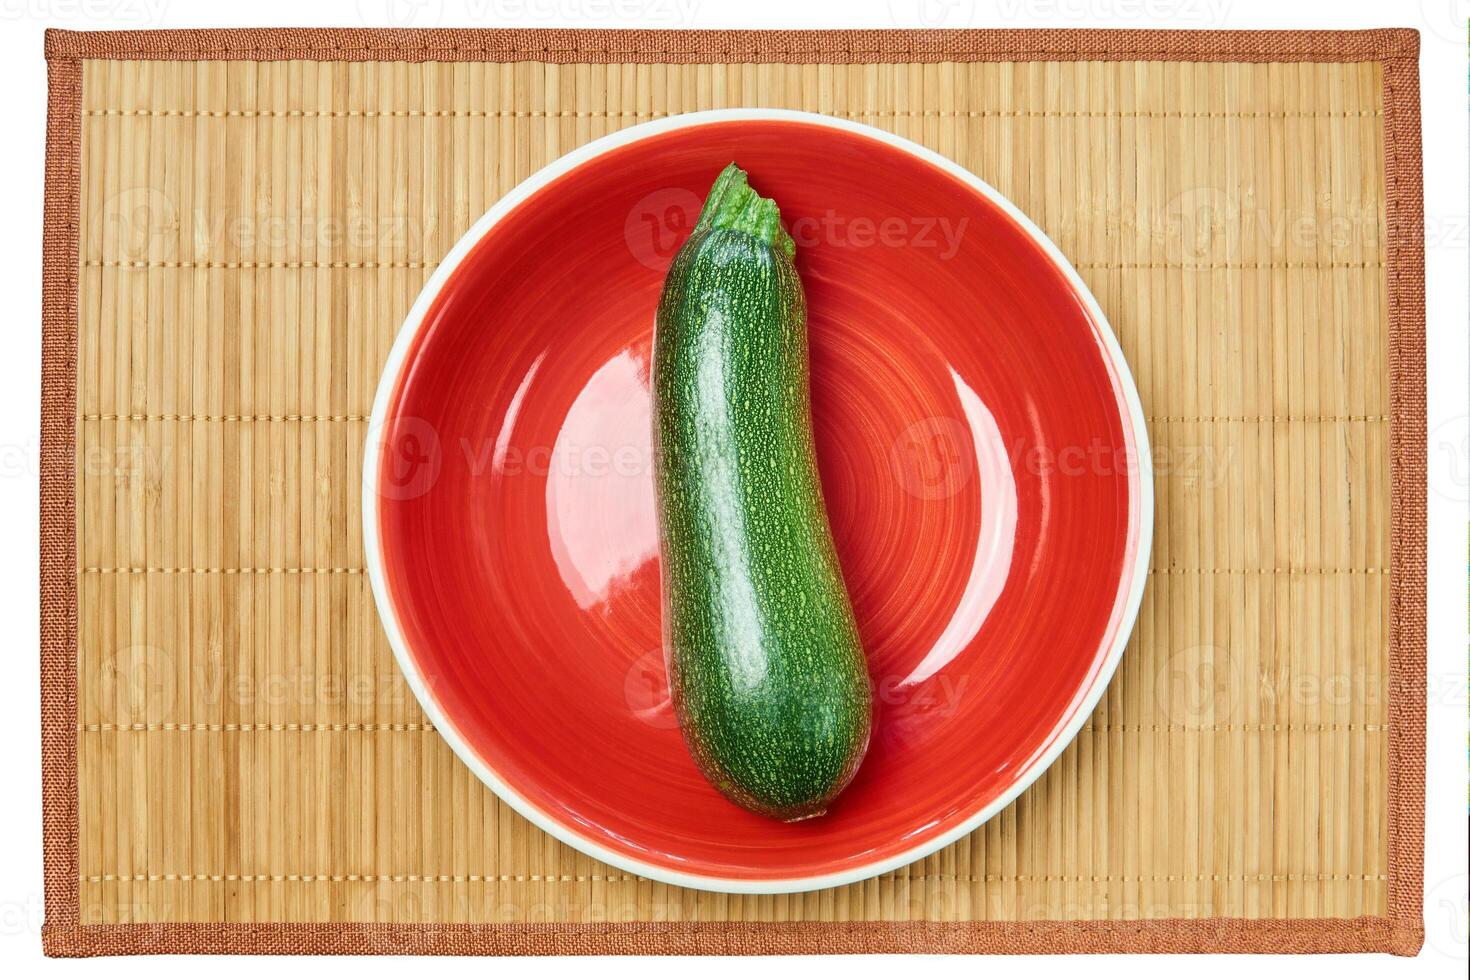 à motifs vert Zucchini écraser sur une rouge assiette sur une canne endroit tapis photo